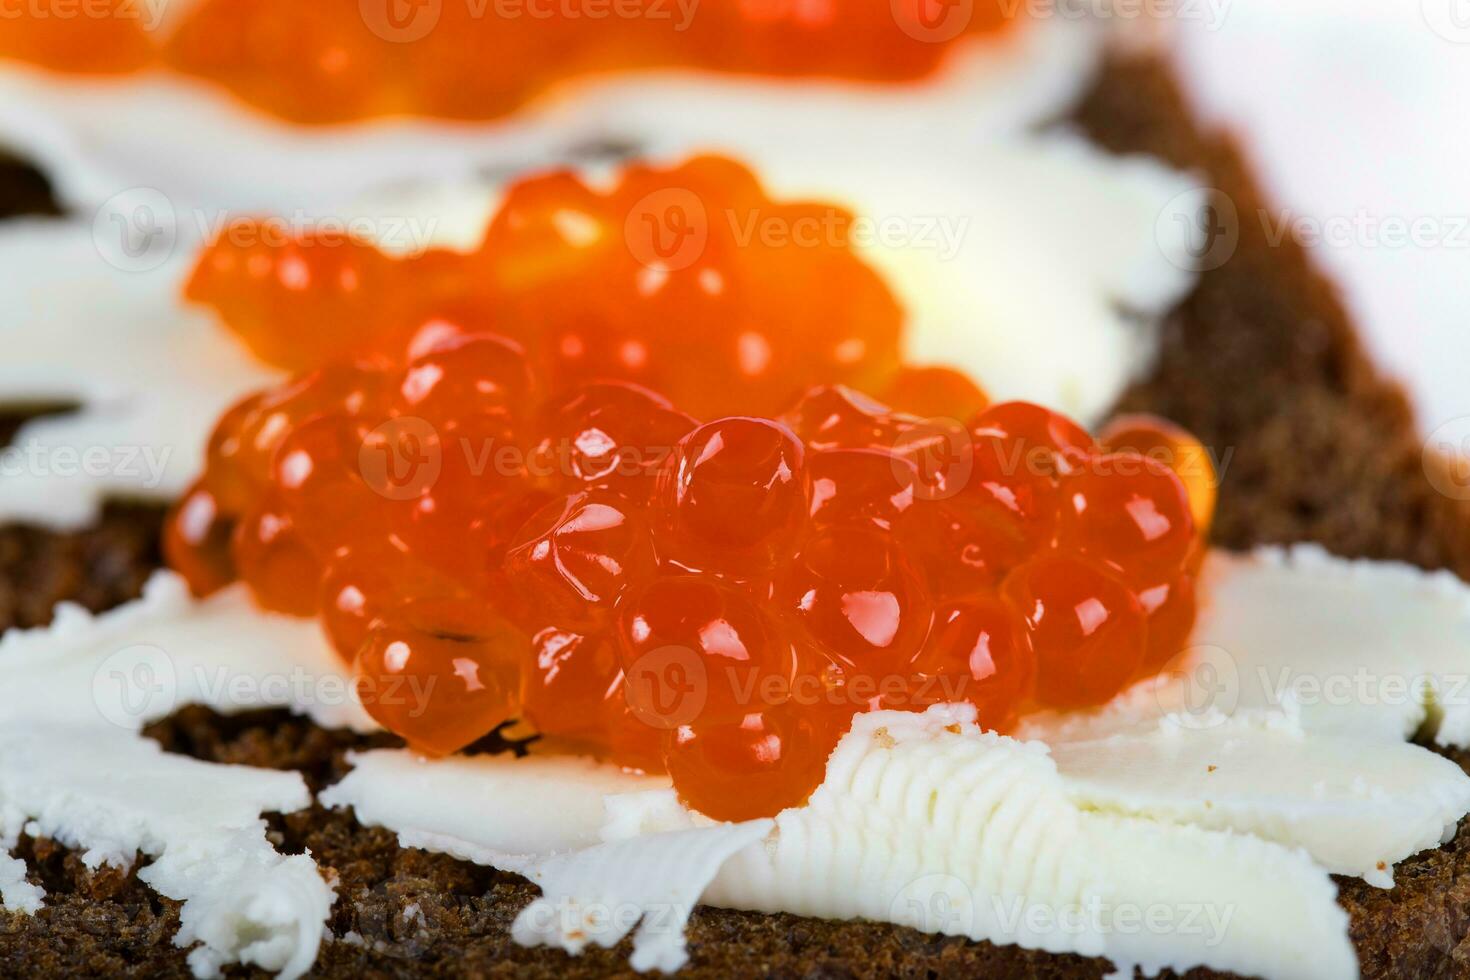 cereal negro un pan con mantequilla y rojo caviar. foto